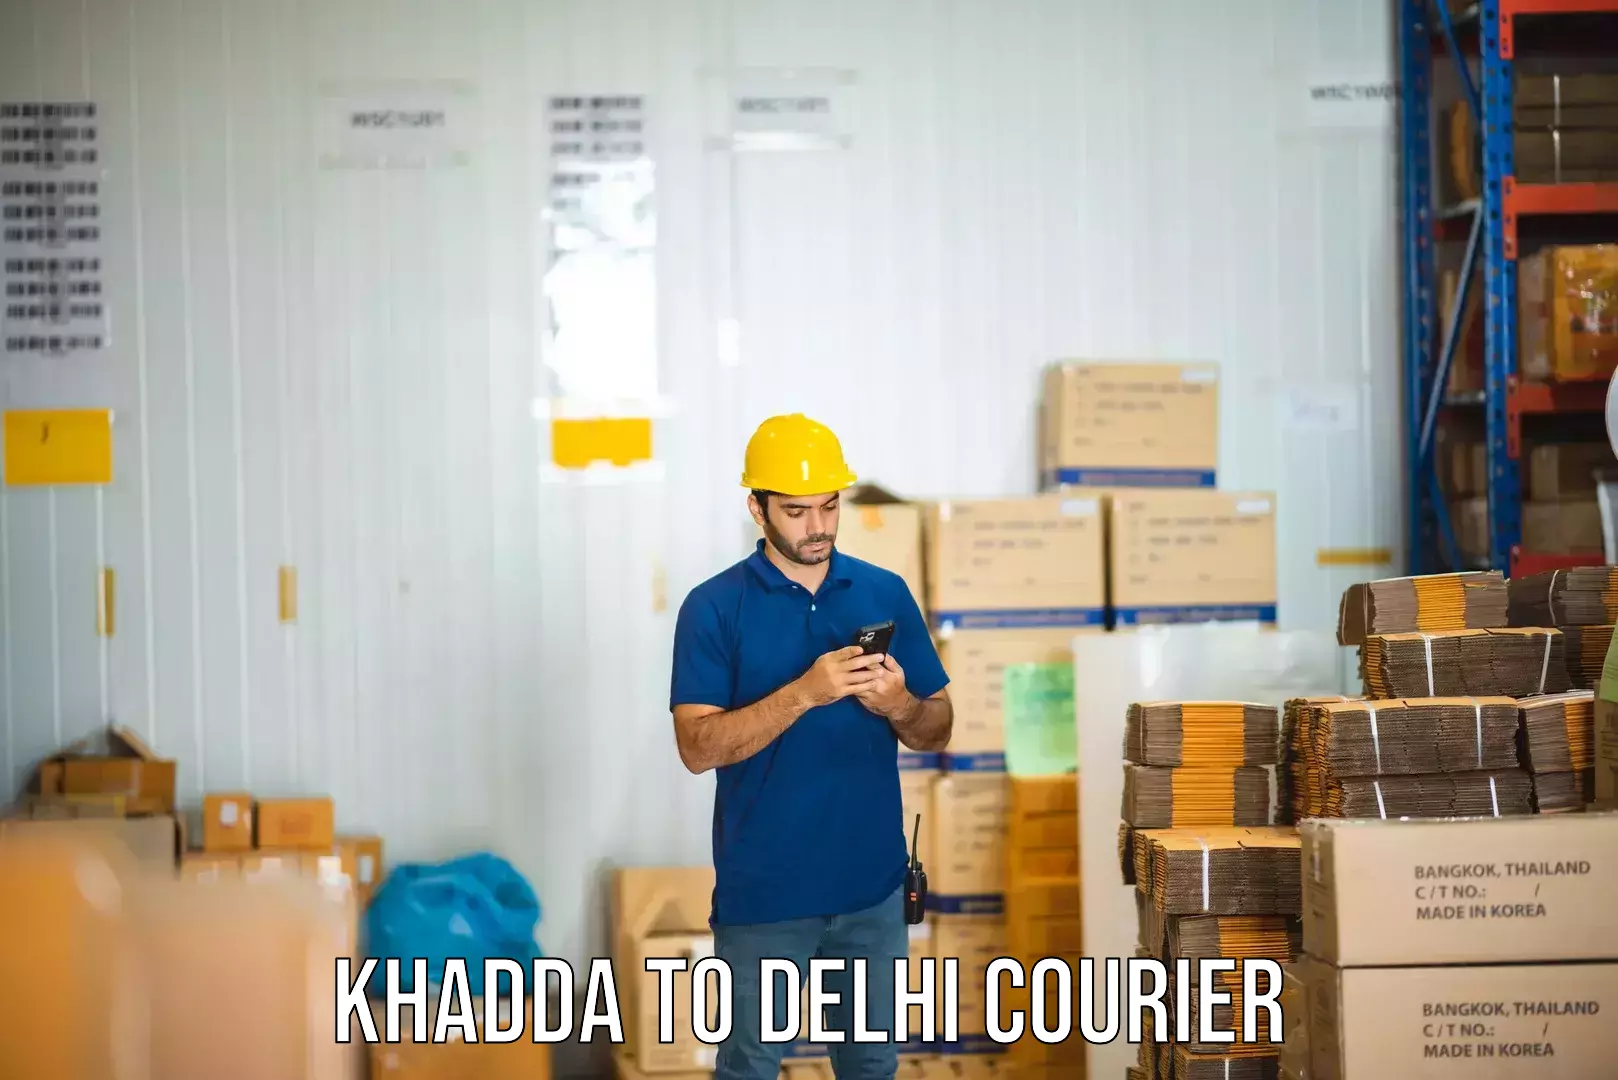 Fast delivery service Khadda to Delhi